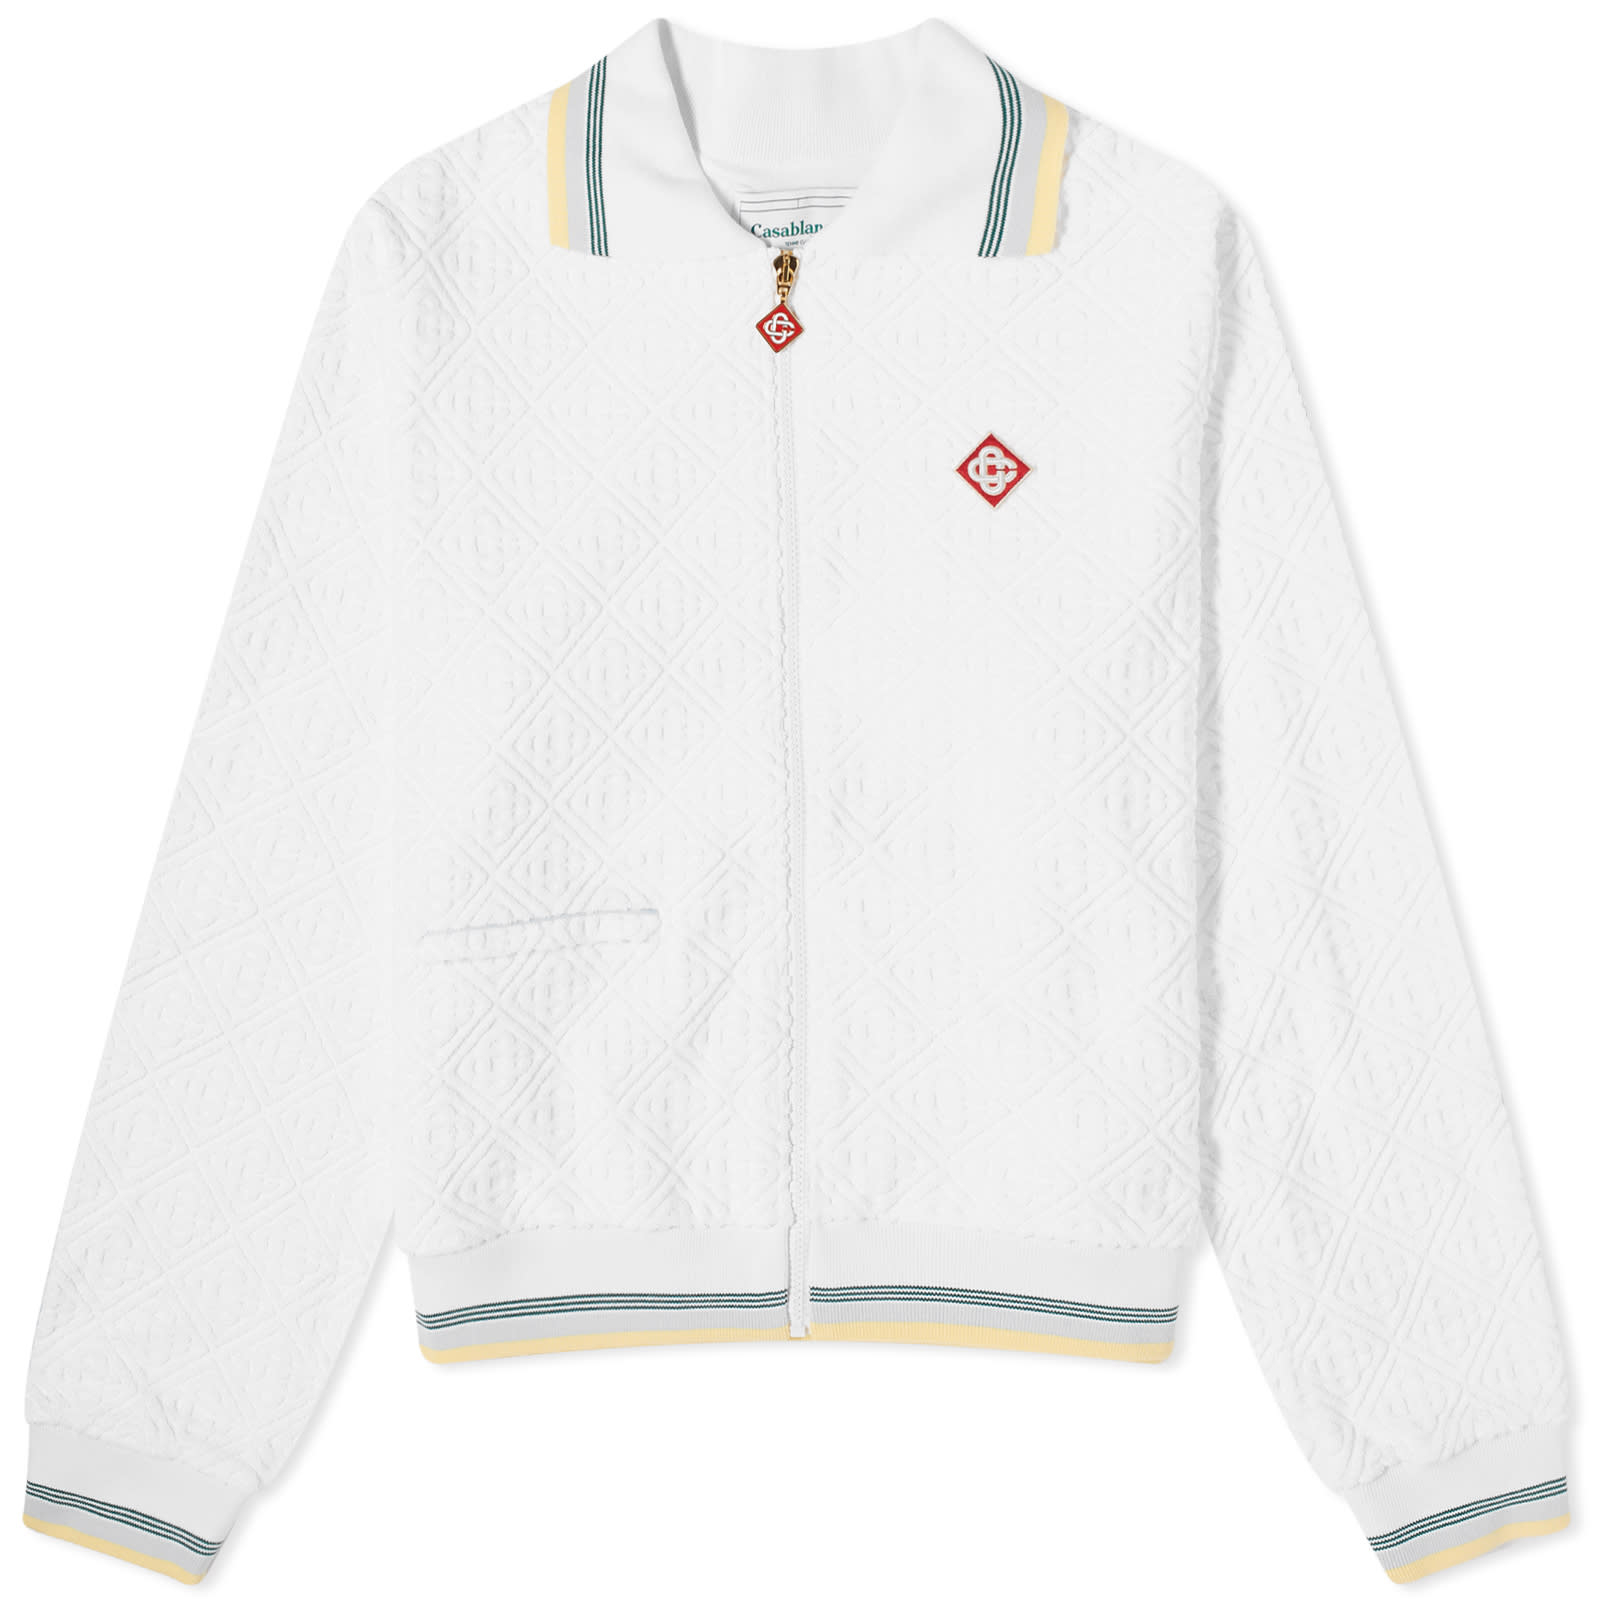 Куртка Casablanca Monogram Towelling Track, белый рубашка из легкой полосатой ткани с вышитым логотипом s синий